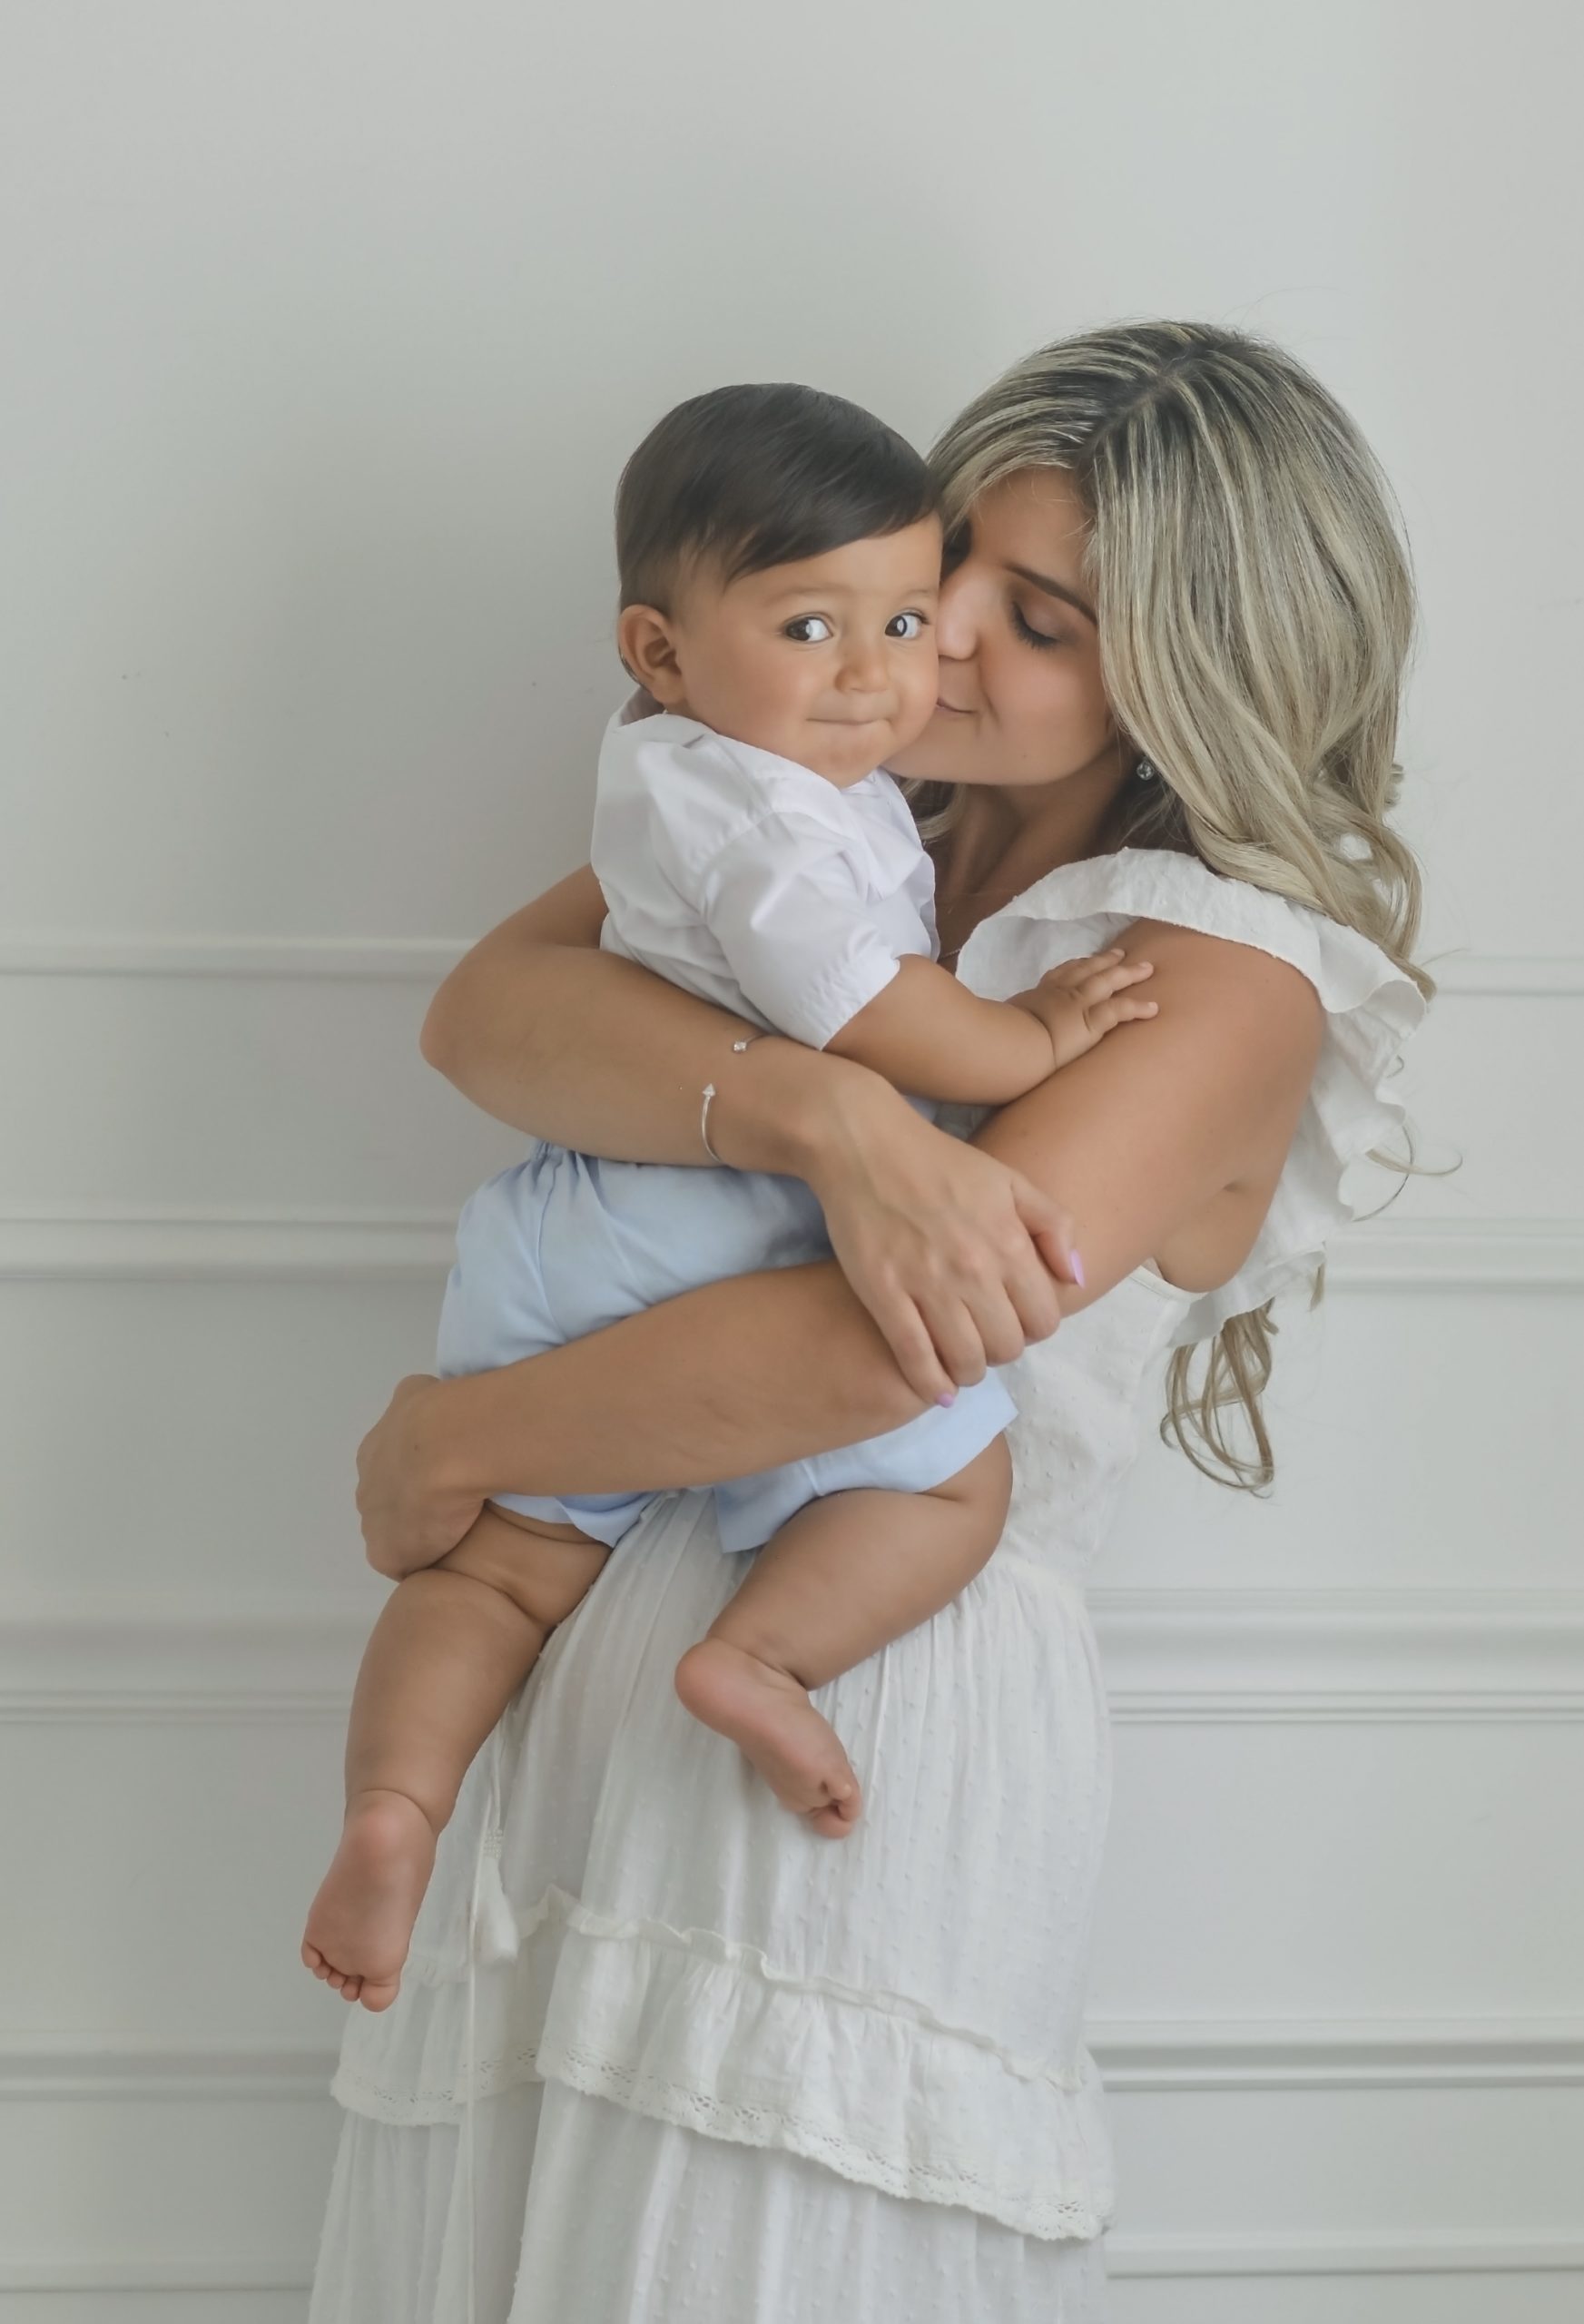 Miami Moms Blog Welcomes: MIA Mom Bella Behar Contributor